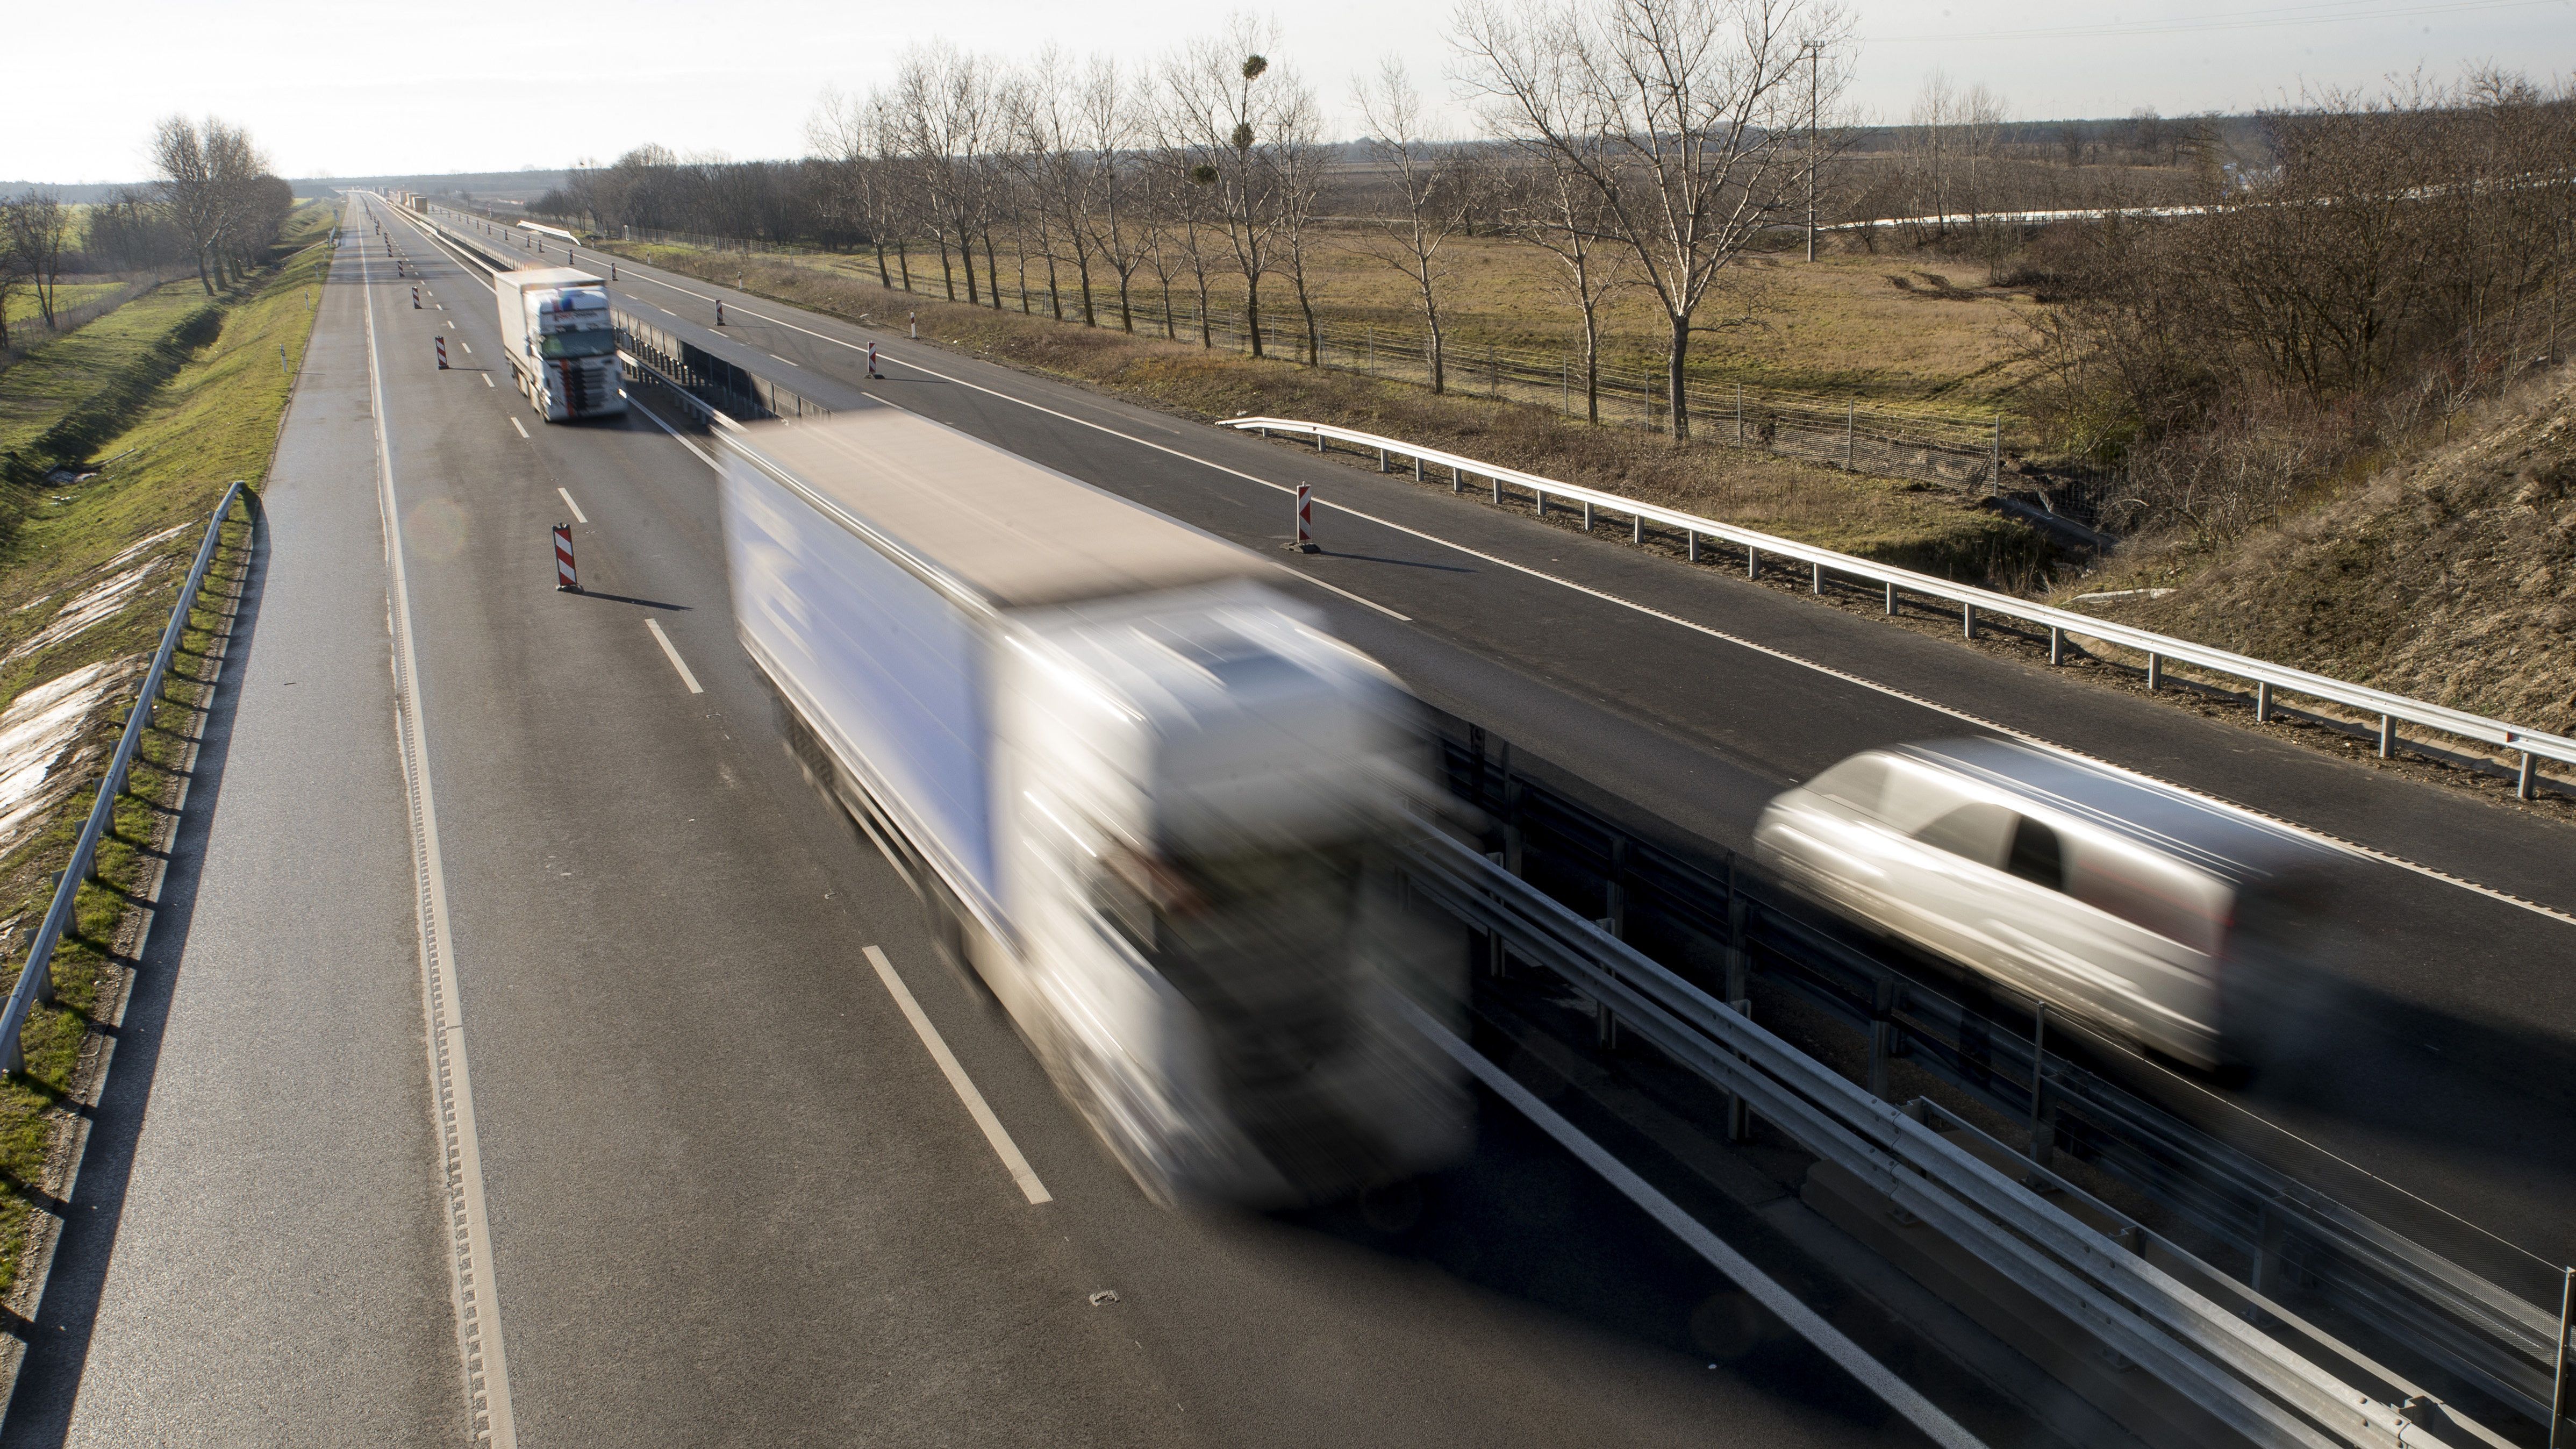 Halott sofőrt találtak egy magyar kamionban Ausztriában